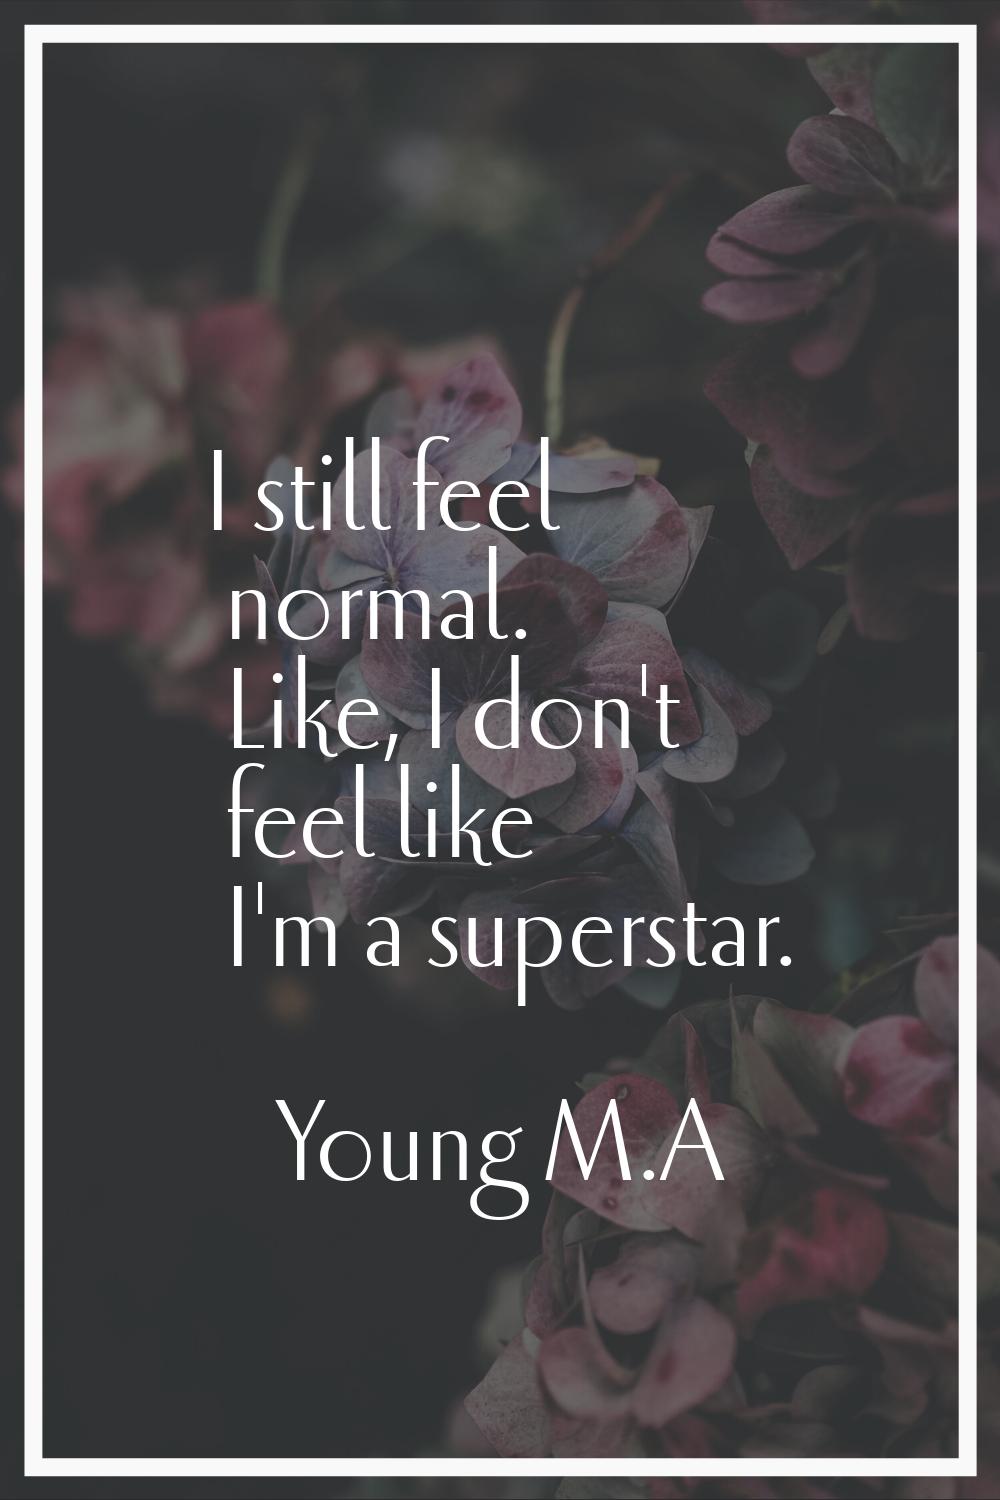 I still feel normal. Like, I don't feel like I'm a superstar.